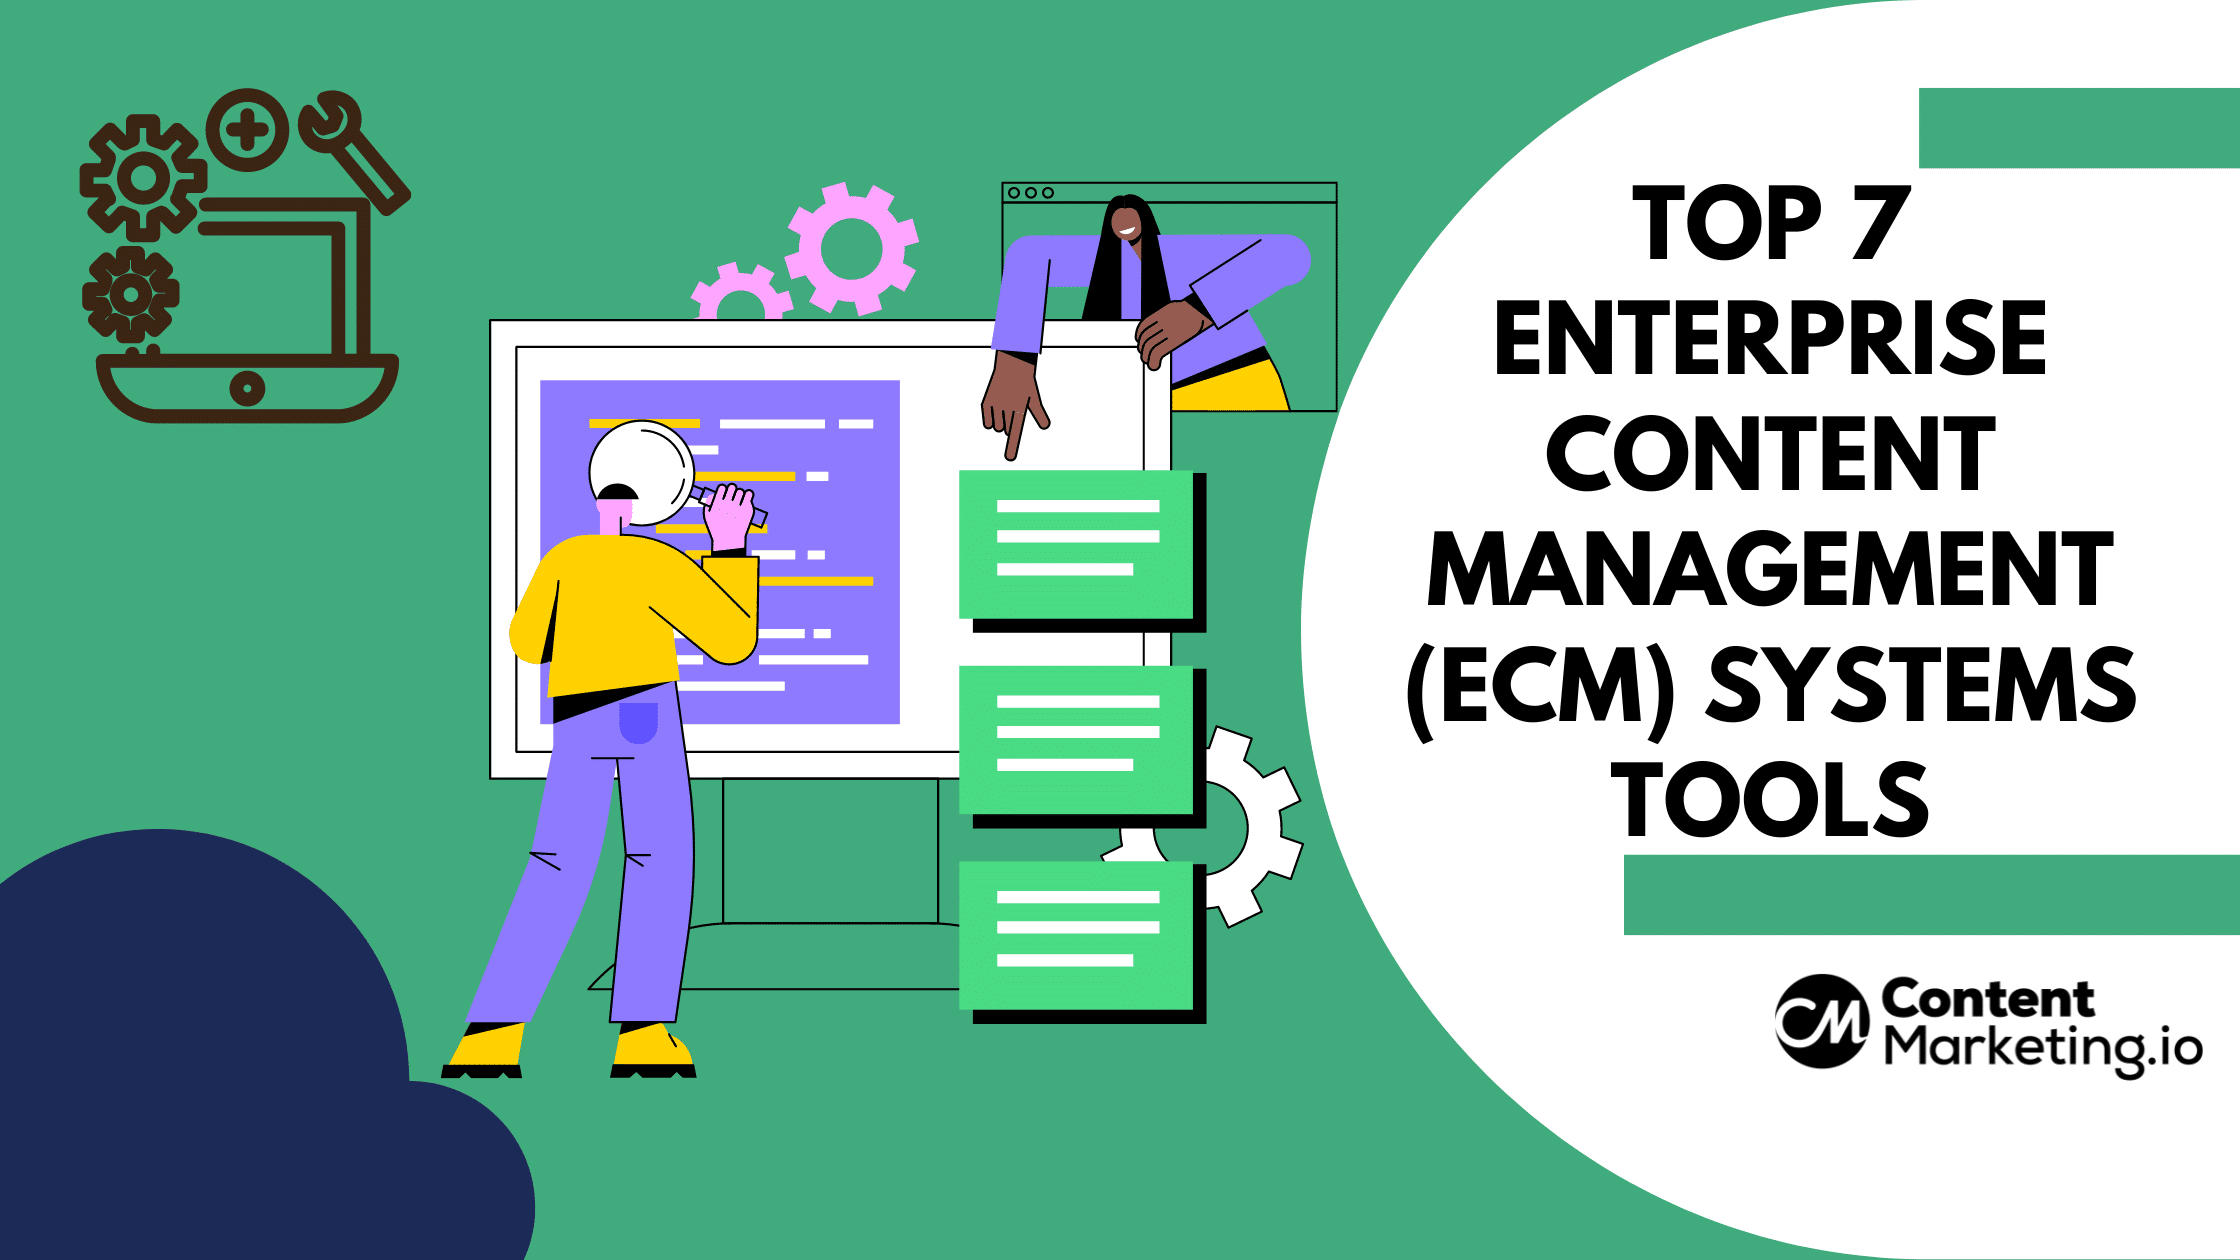 Enterprise Content Management Systems